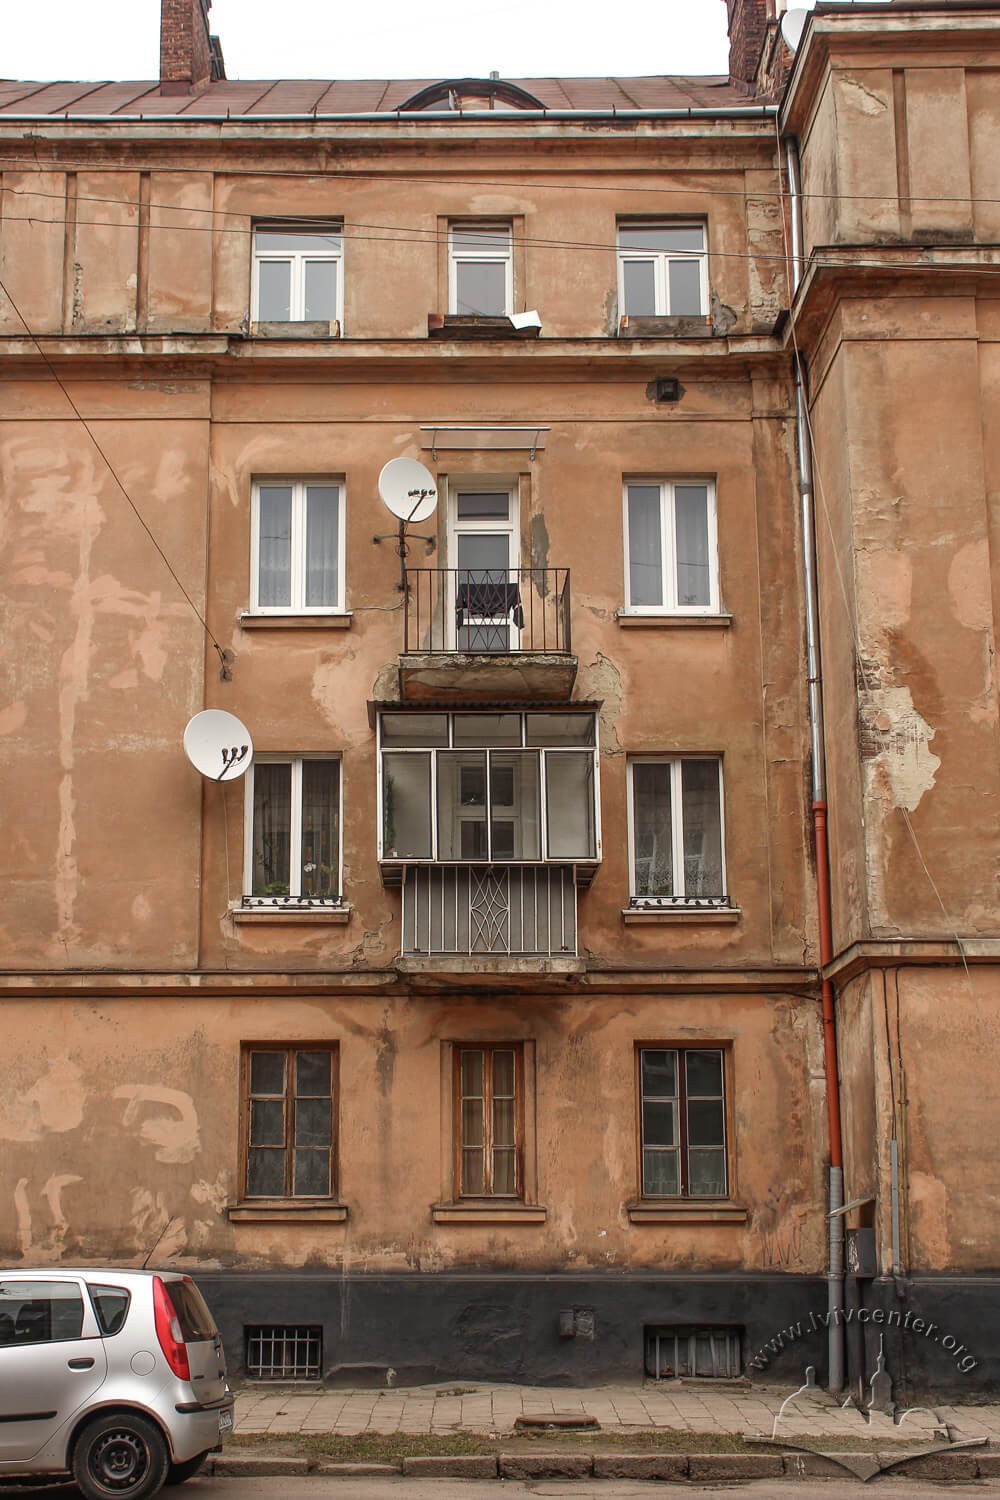 Vul. Donetska, 1. Section of the main facade/Photo courtesy of Olha Zarechnyuk, 2016